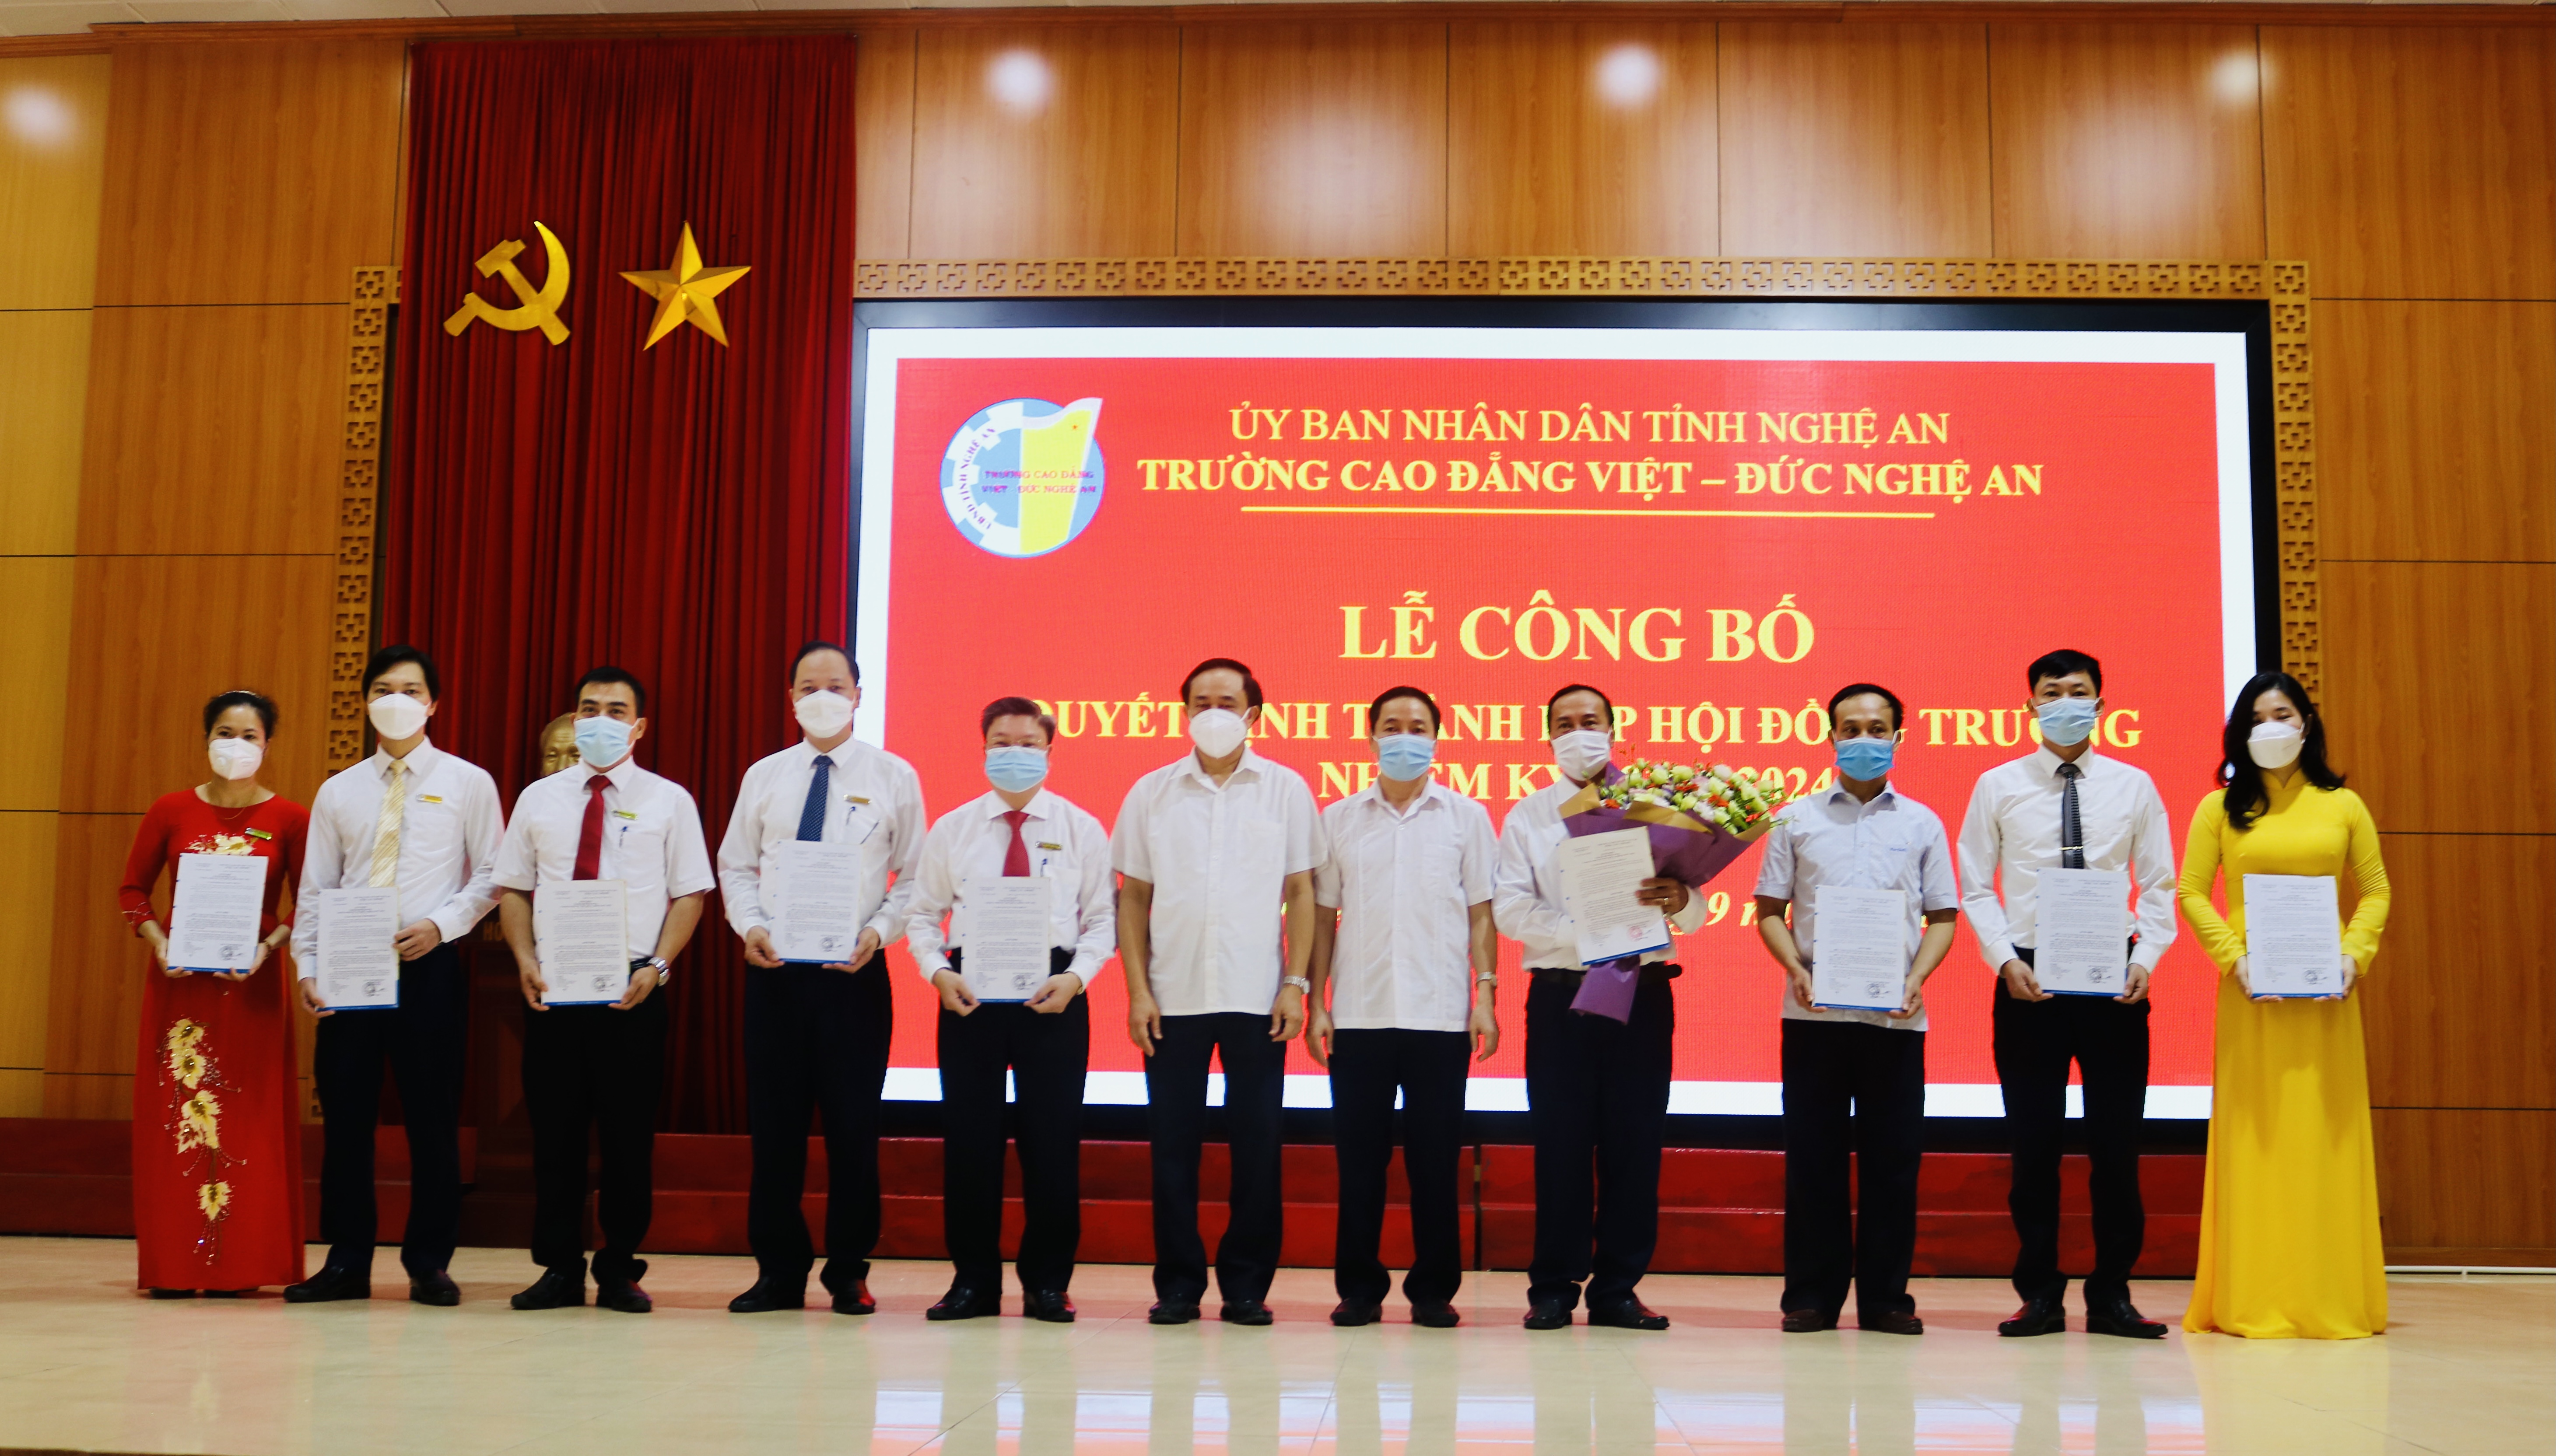   Lễ công bố Quyết định thành lập Hội đồng trường, Trường Cao đẳng Việt – Đức Nghệ An